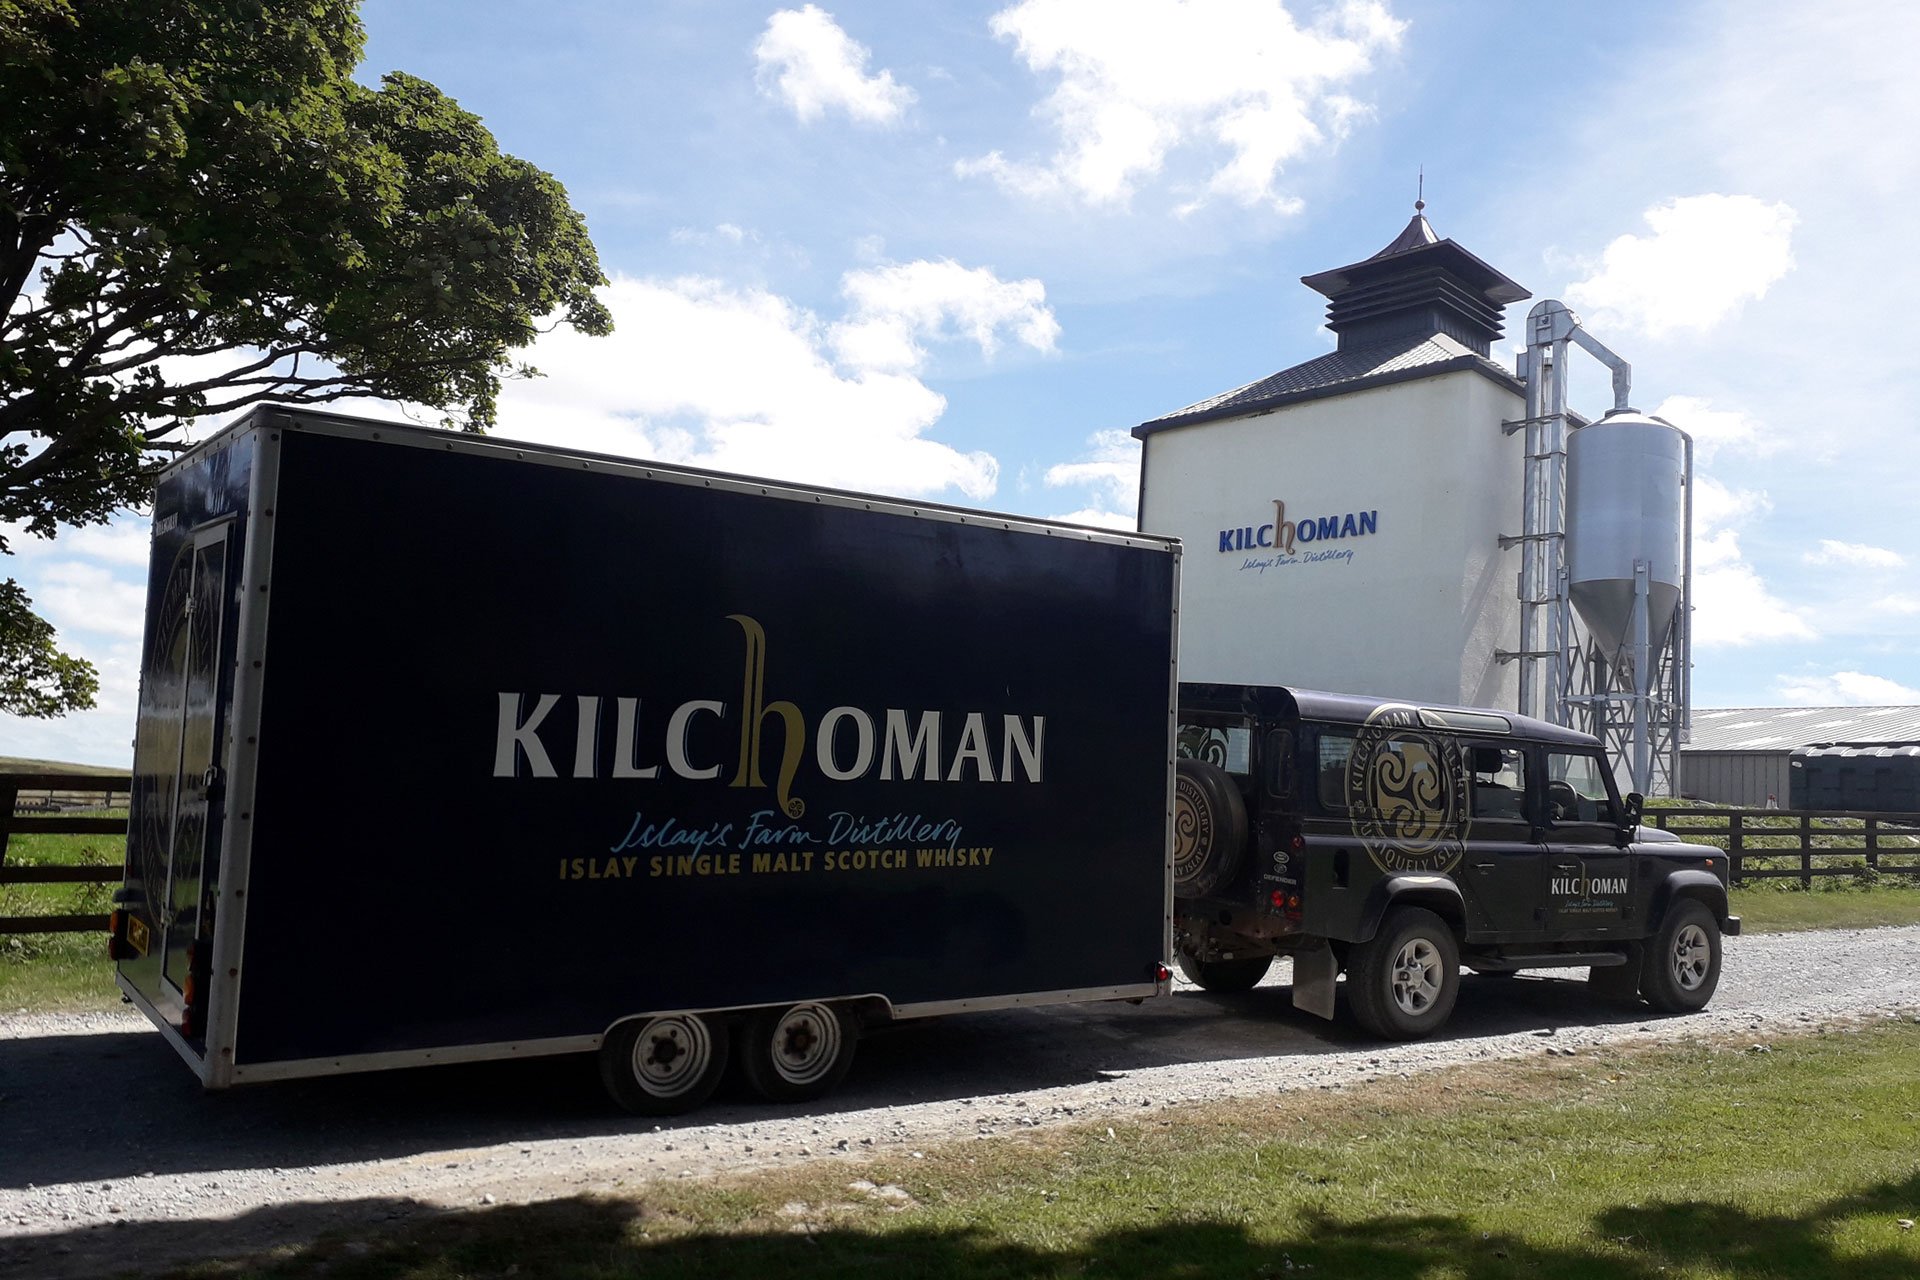 Kilchoman Destillerie Trailer